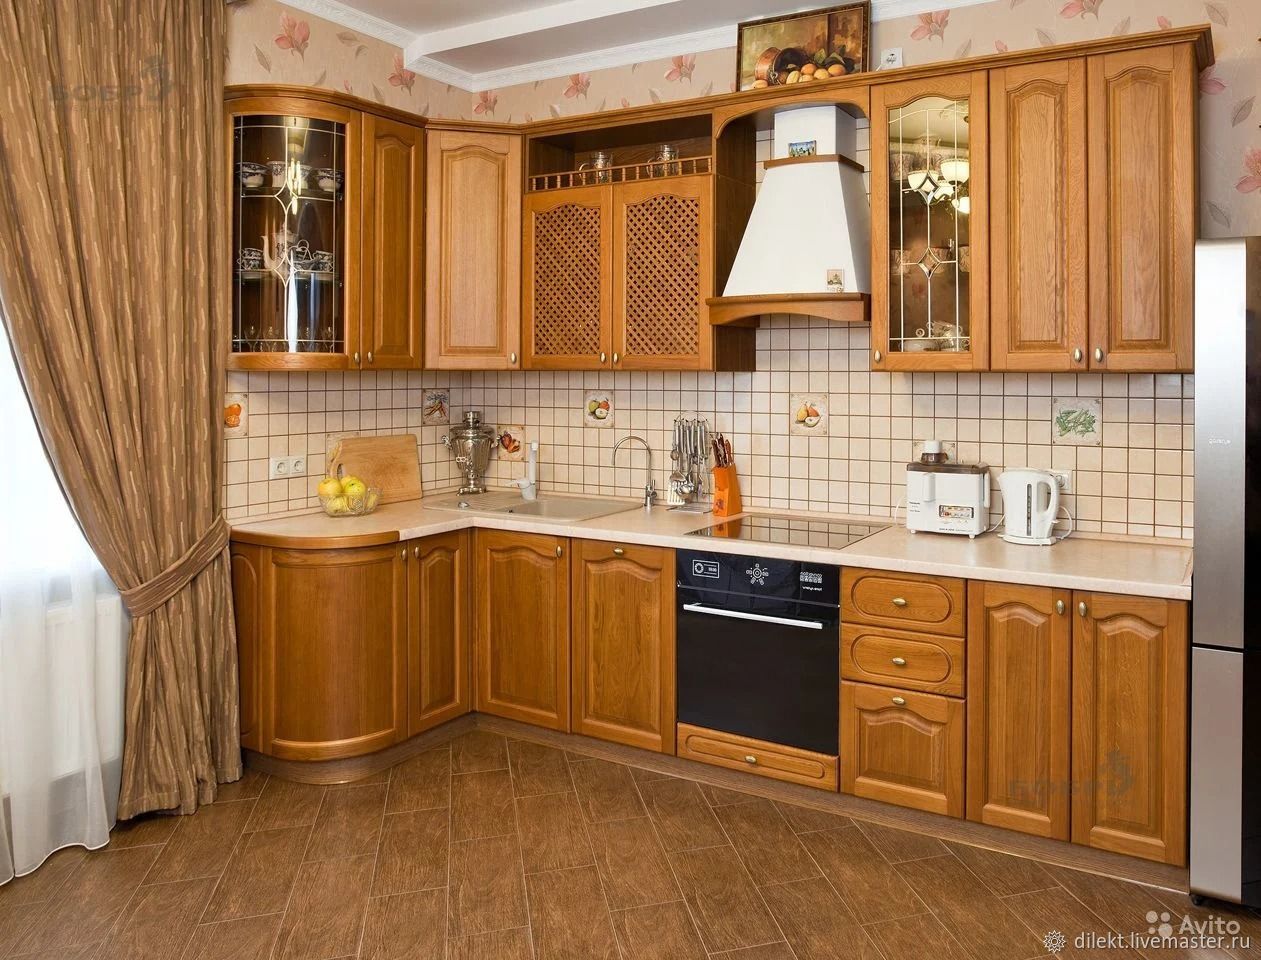 Кухни кропоткин. Кухня угловая деревянная. Кухонный гарнитур дерево. Кухонный гарнитур из массива. Угловые кухни из массива дерева.